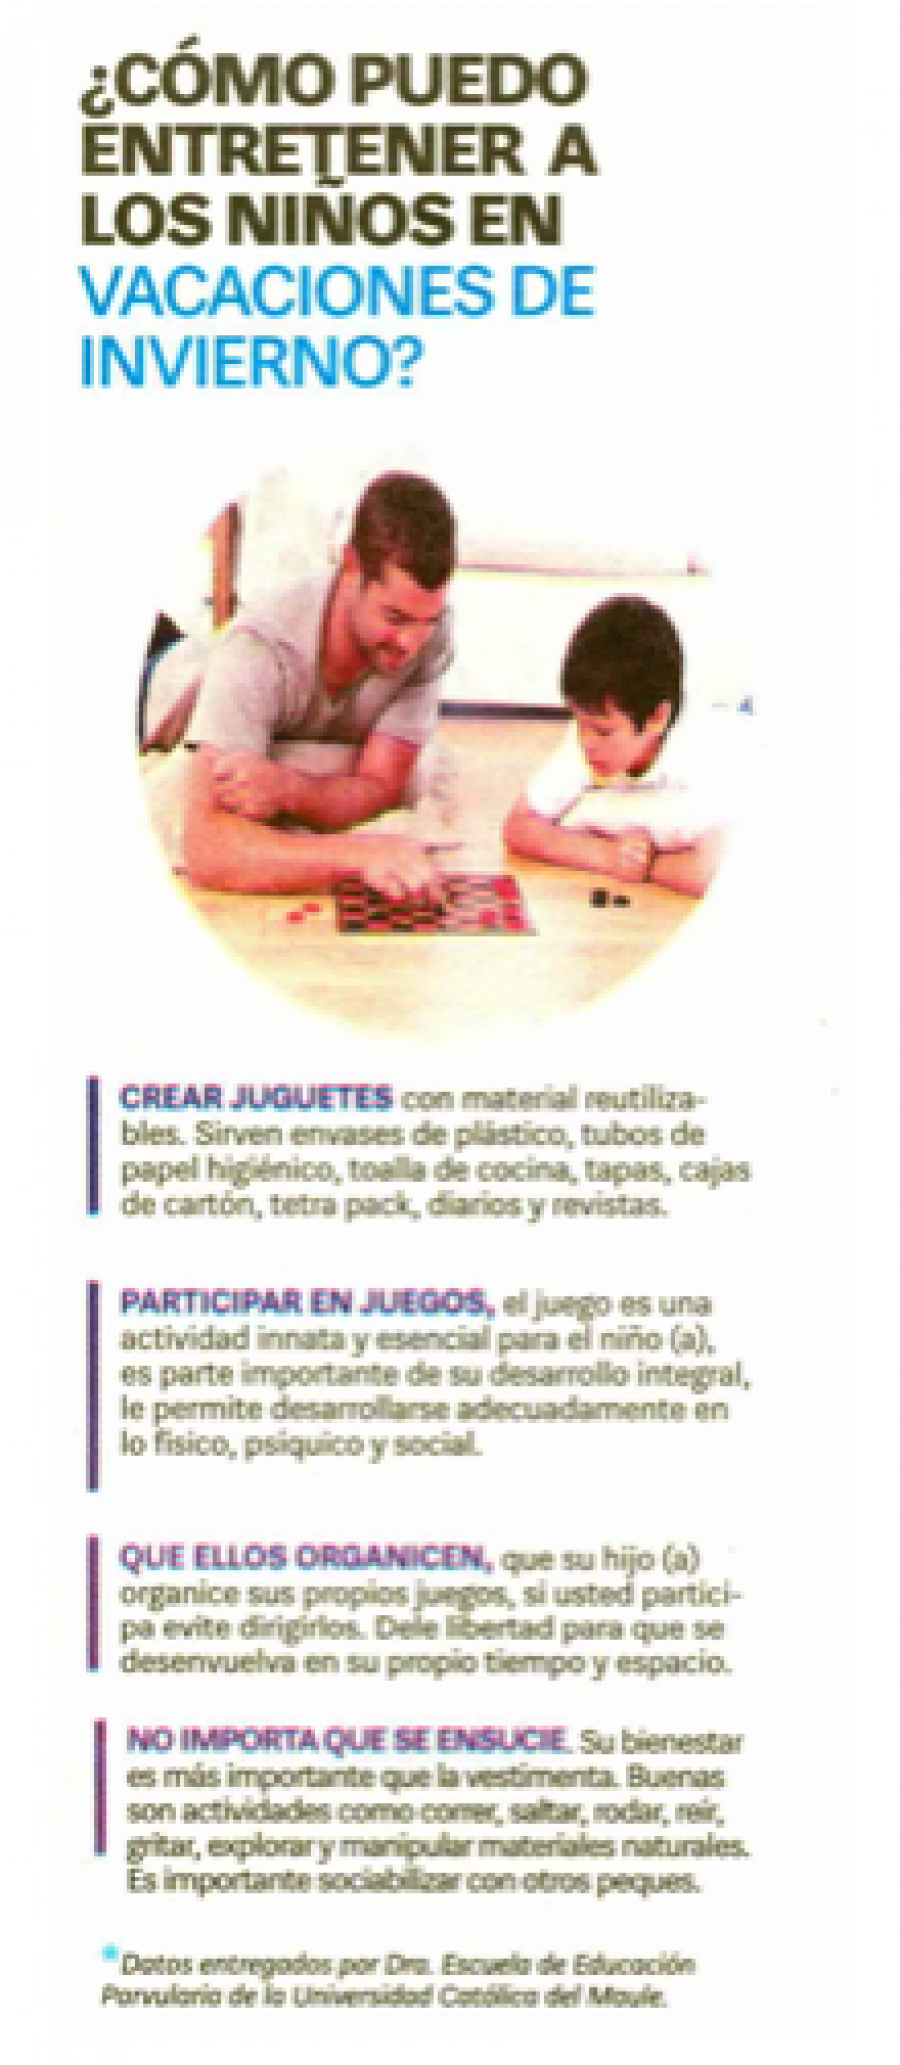 08 de julio en Diario La Cuarta: “¿Cómo puedo entretener a los niños en vacaciones de invierno?